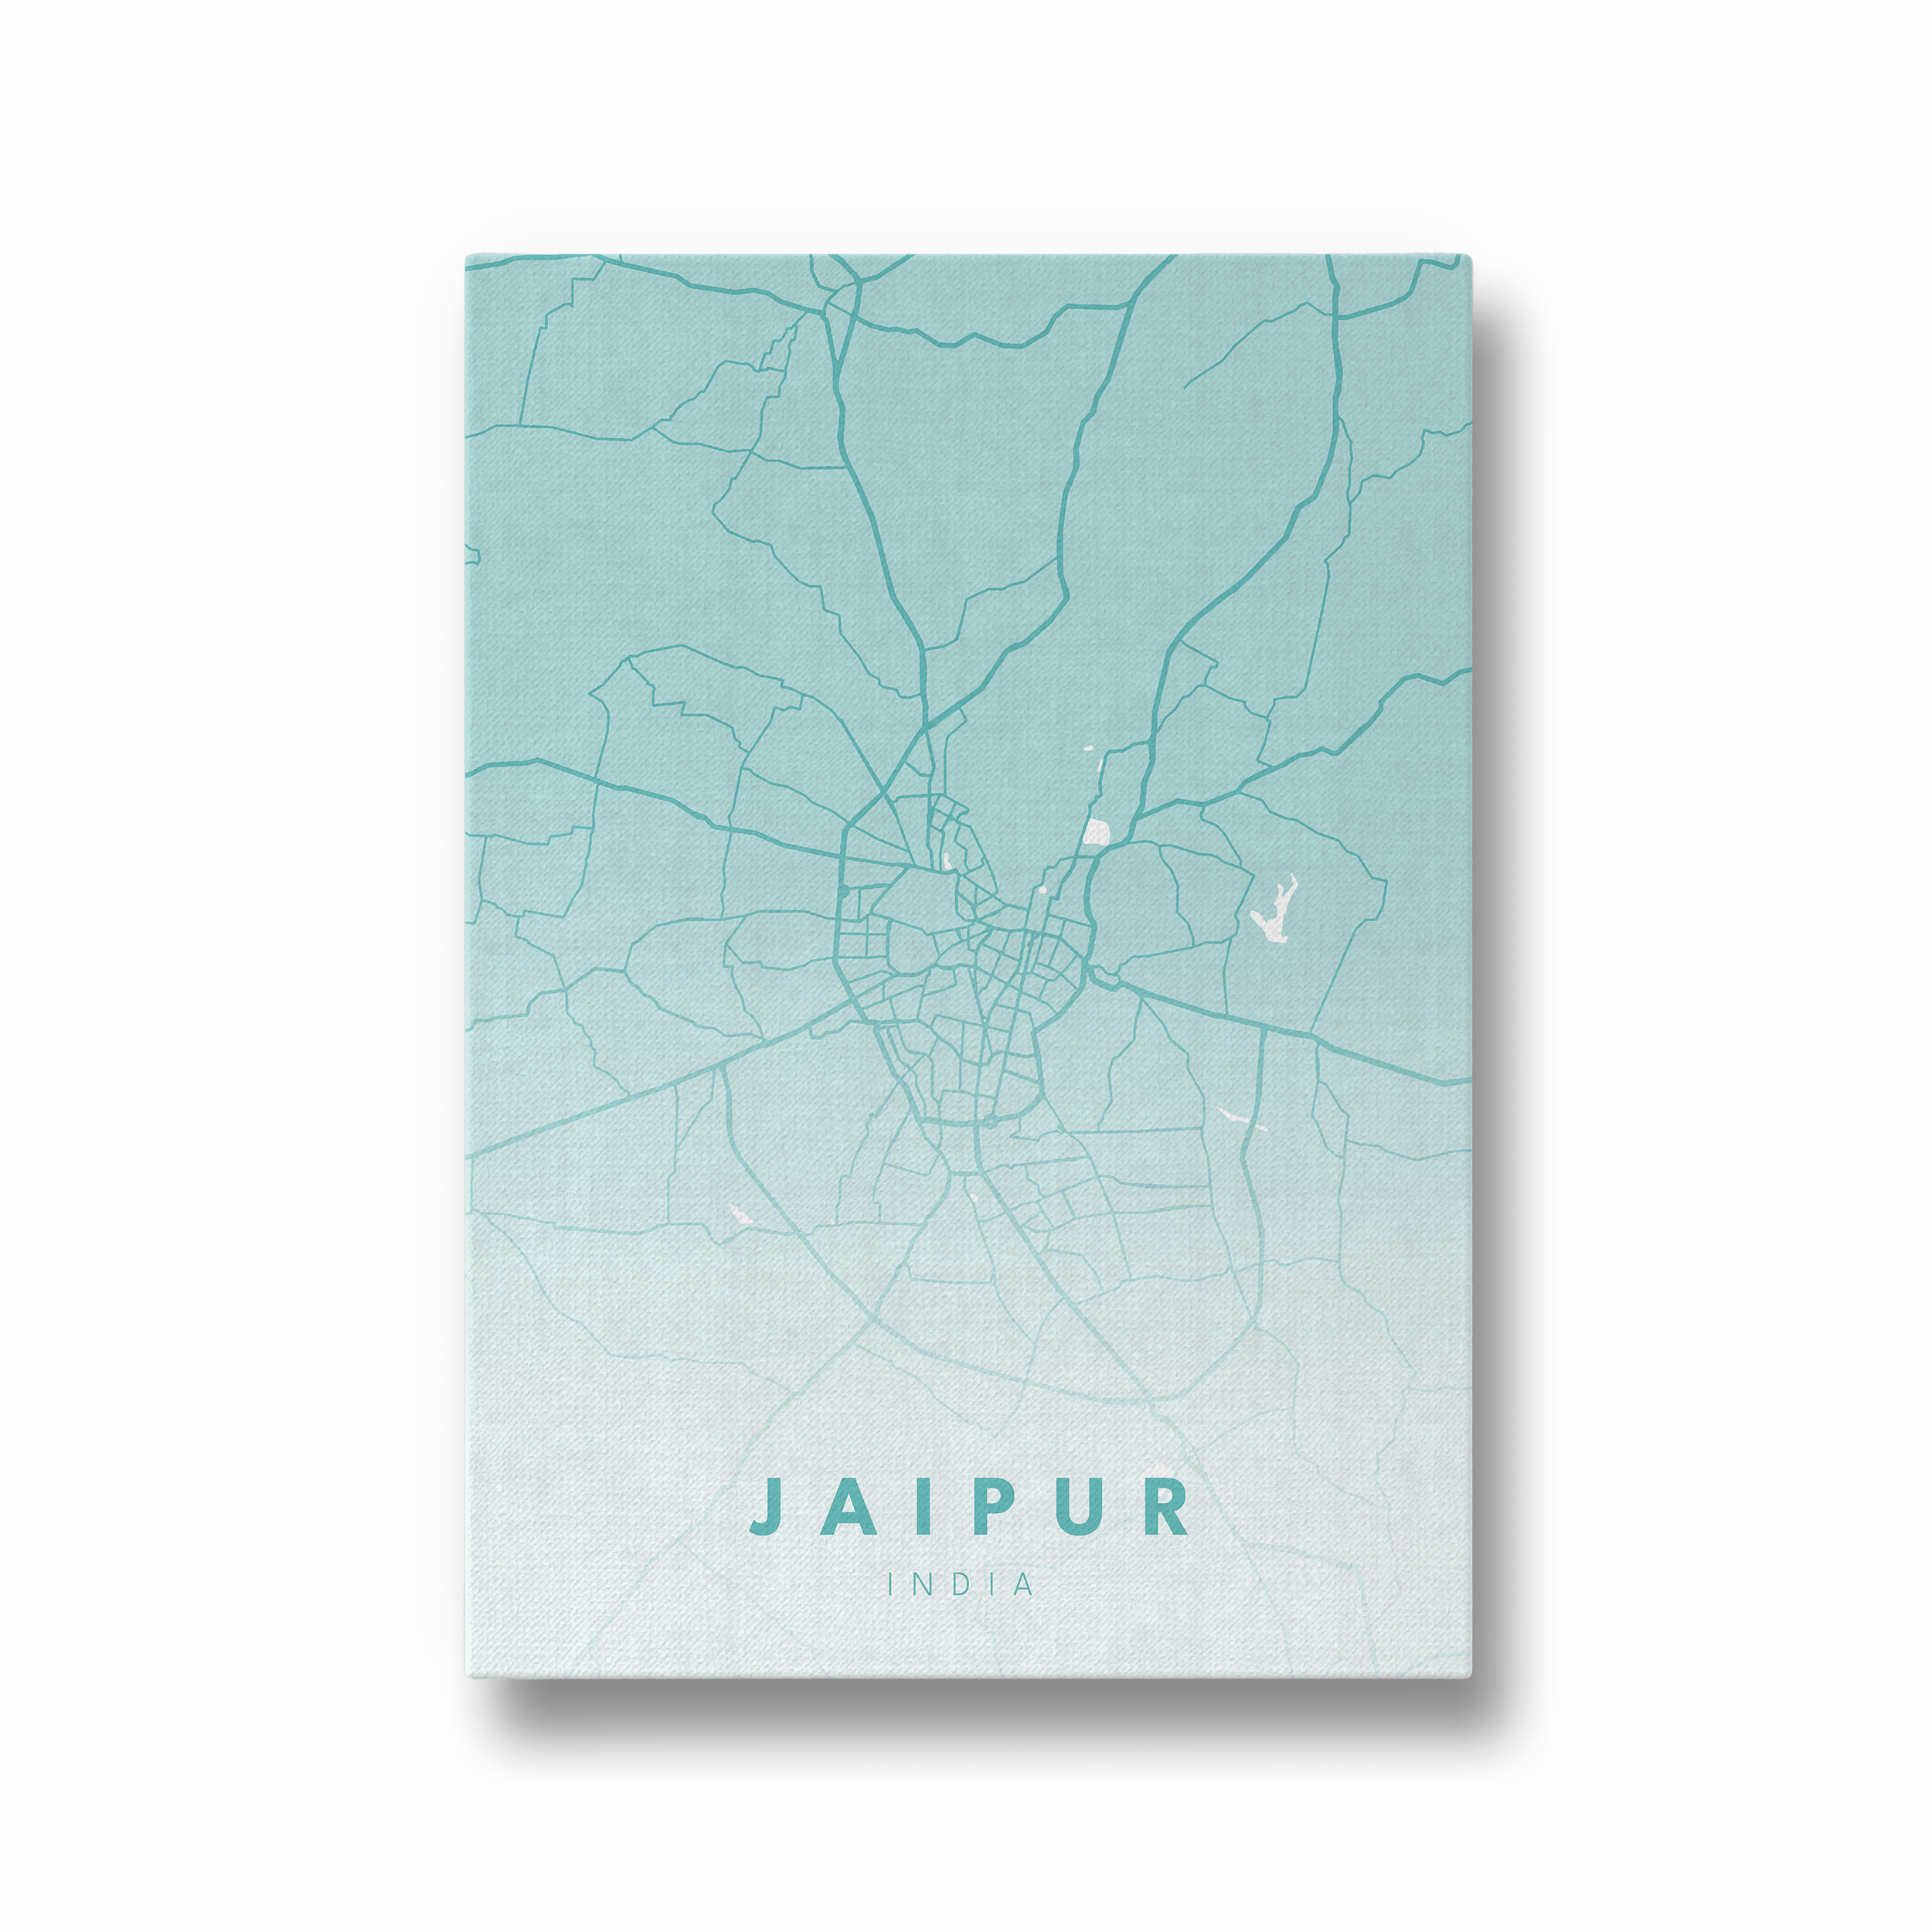 Jaipur City Street Map Art